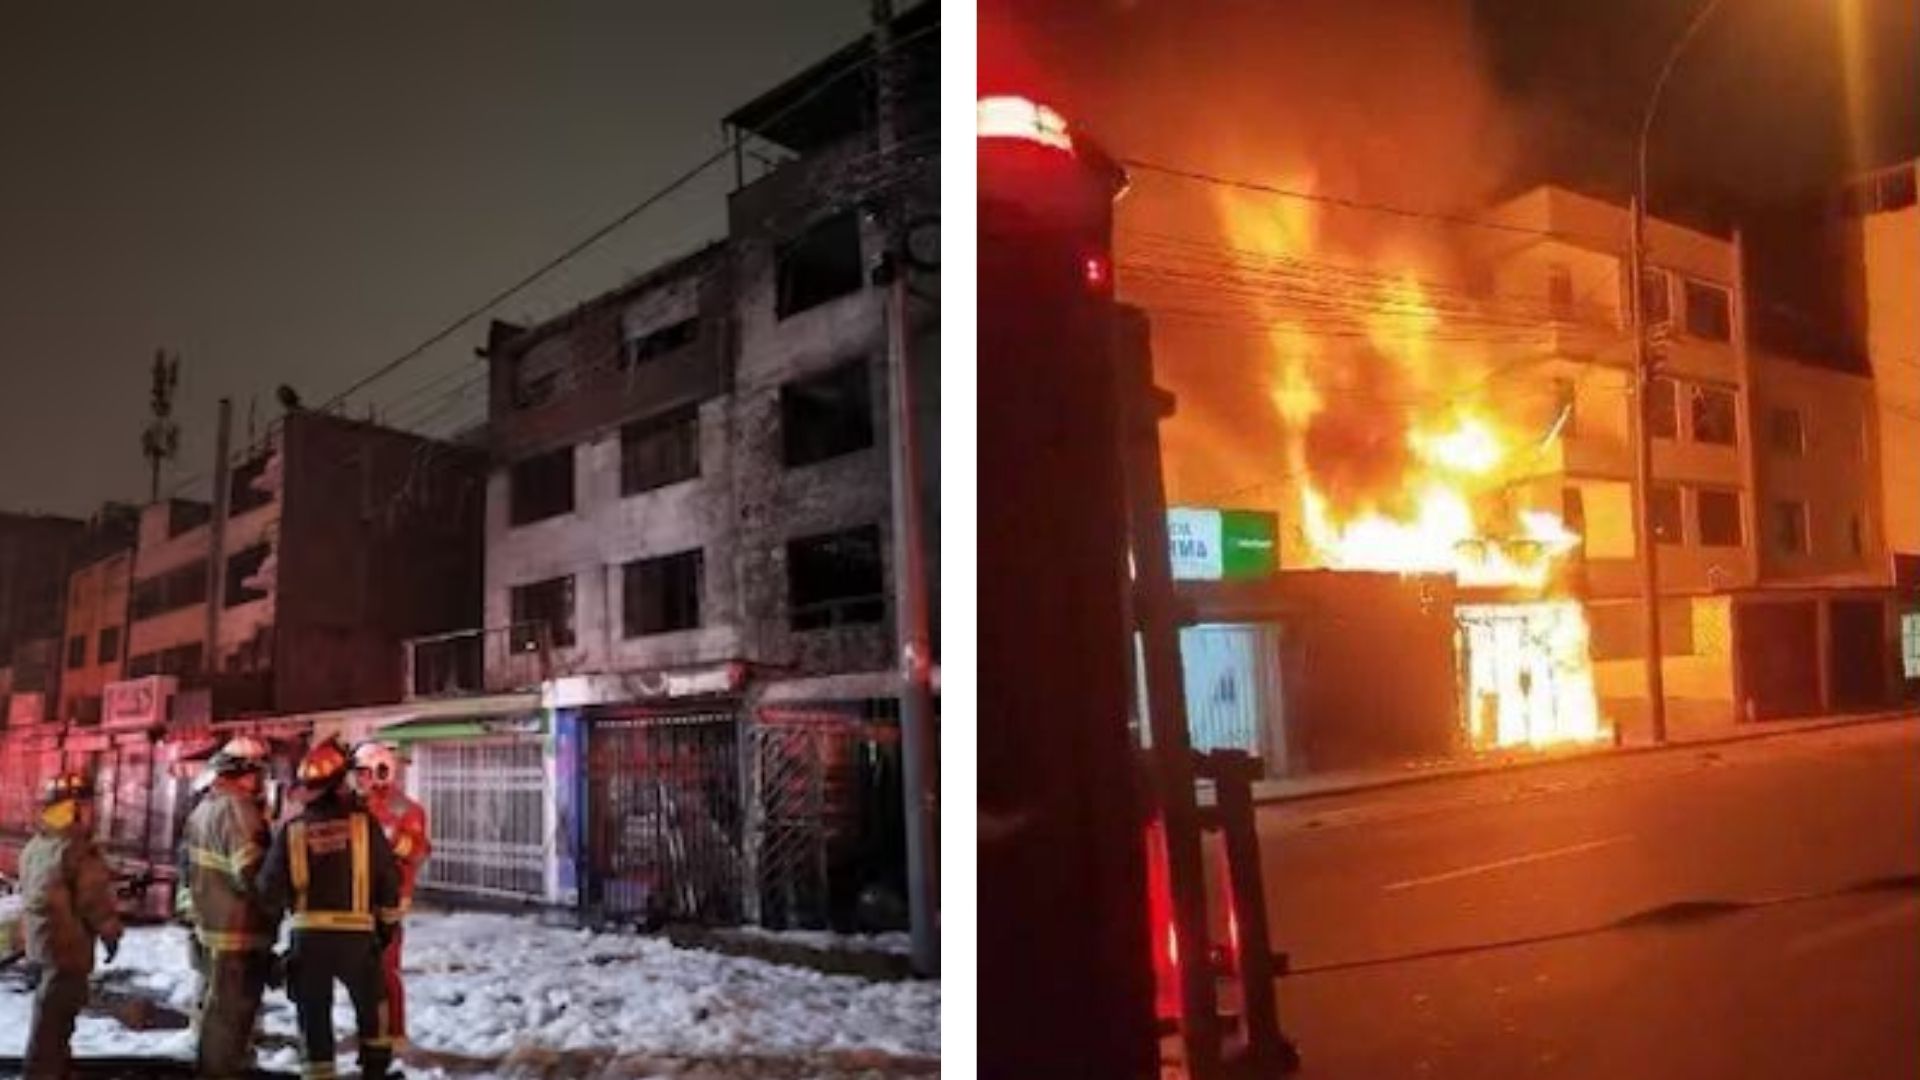 ¡Alerta en San Borja! Incendio dejo en ruinas a edificio